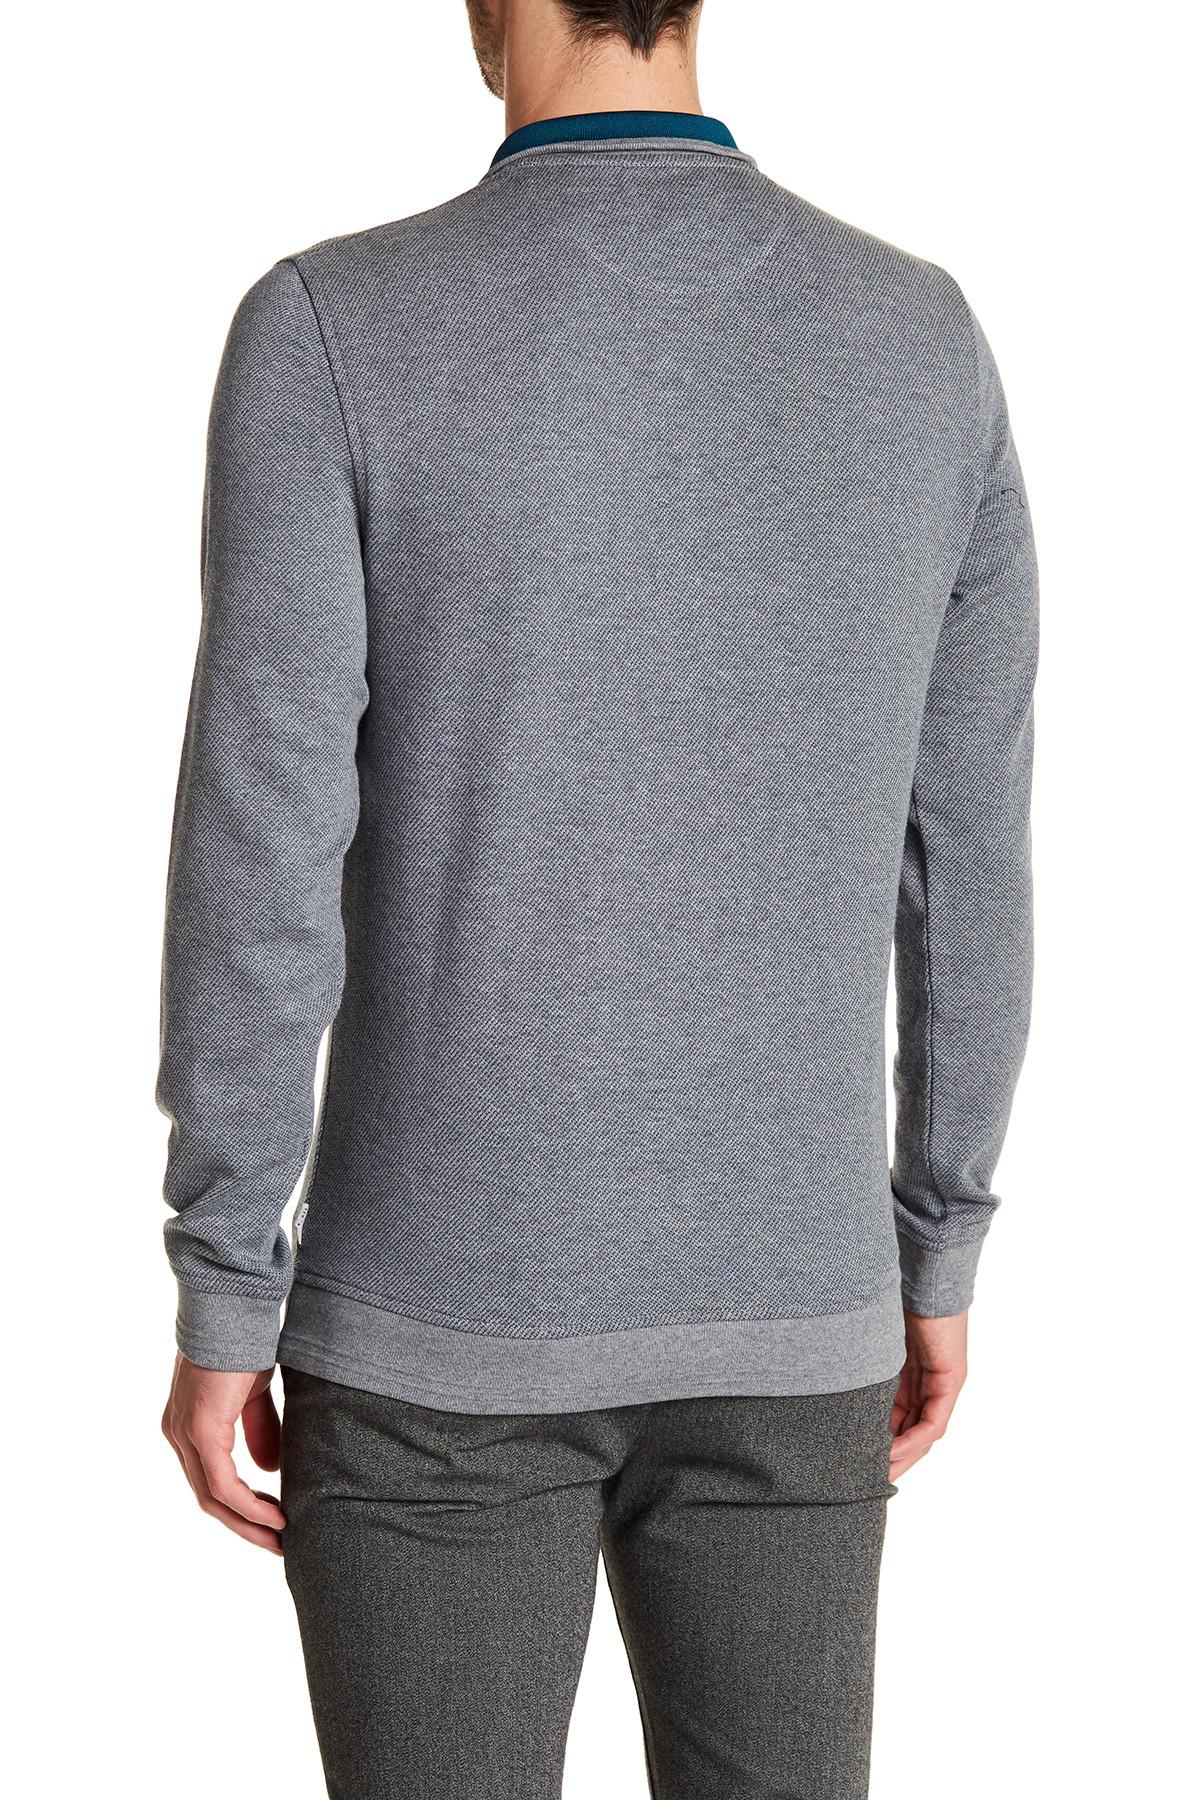 Lyst - Ted Baker Half Zip Sweater in Gray for Men